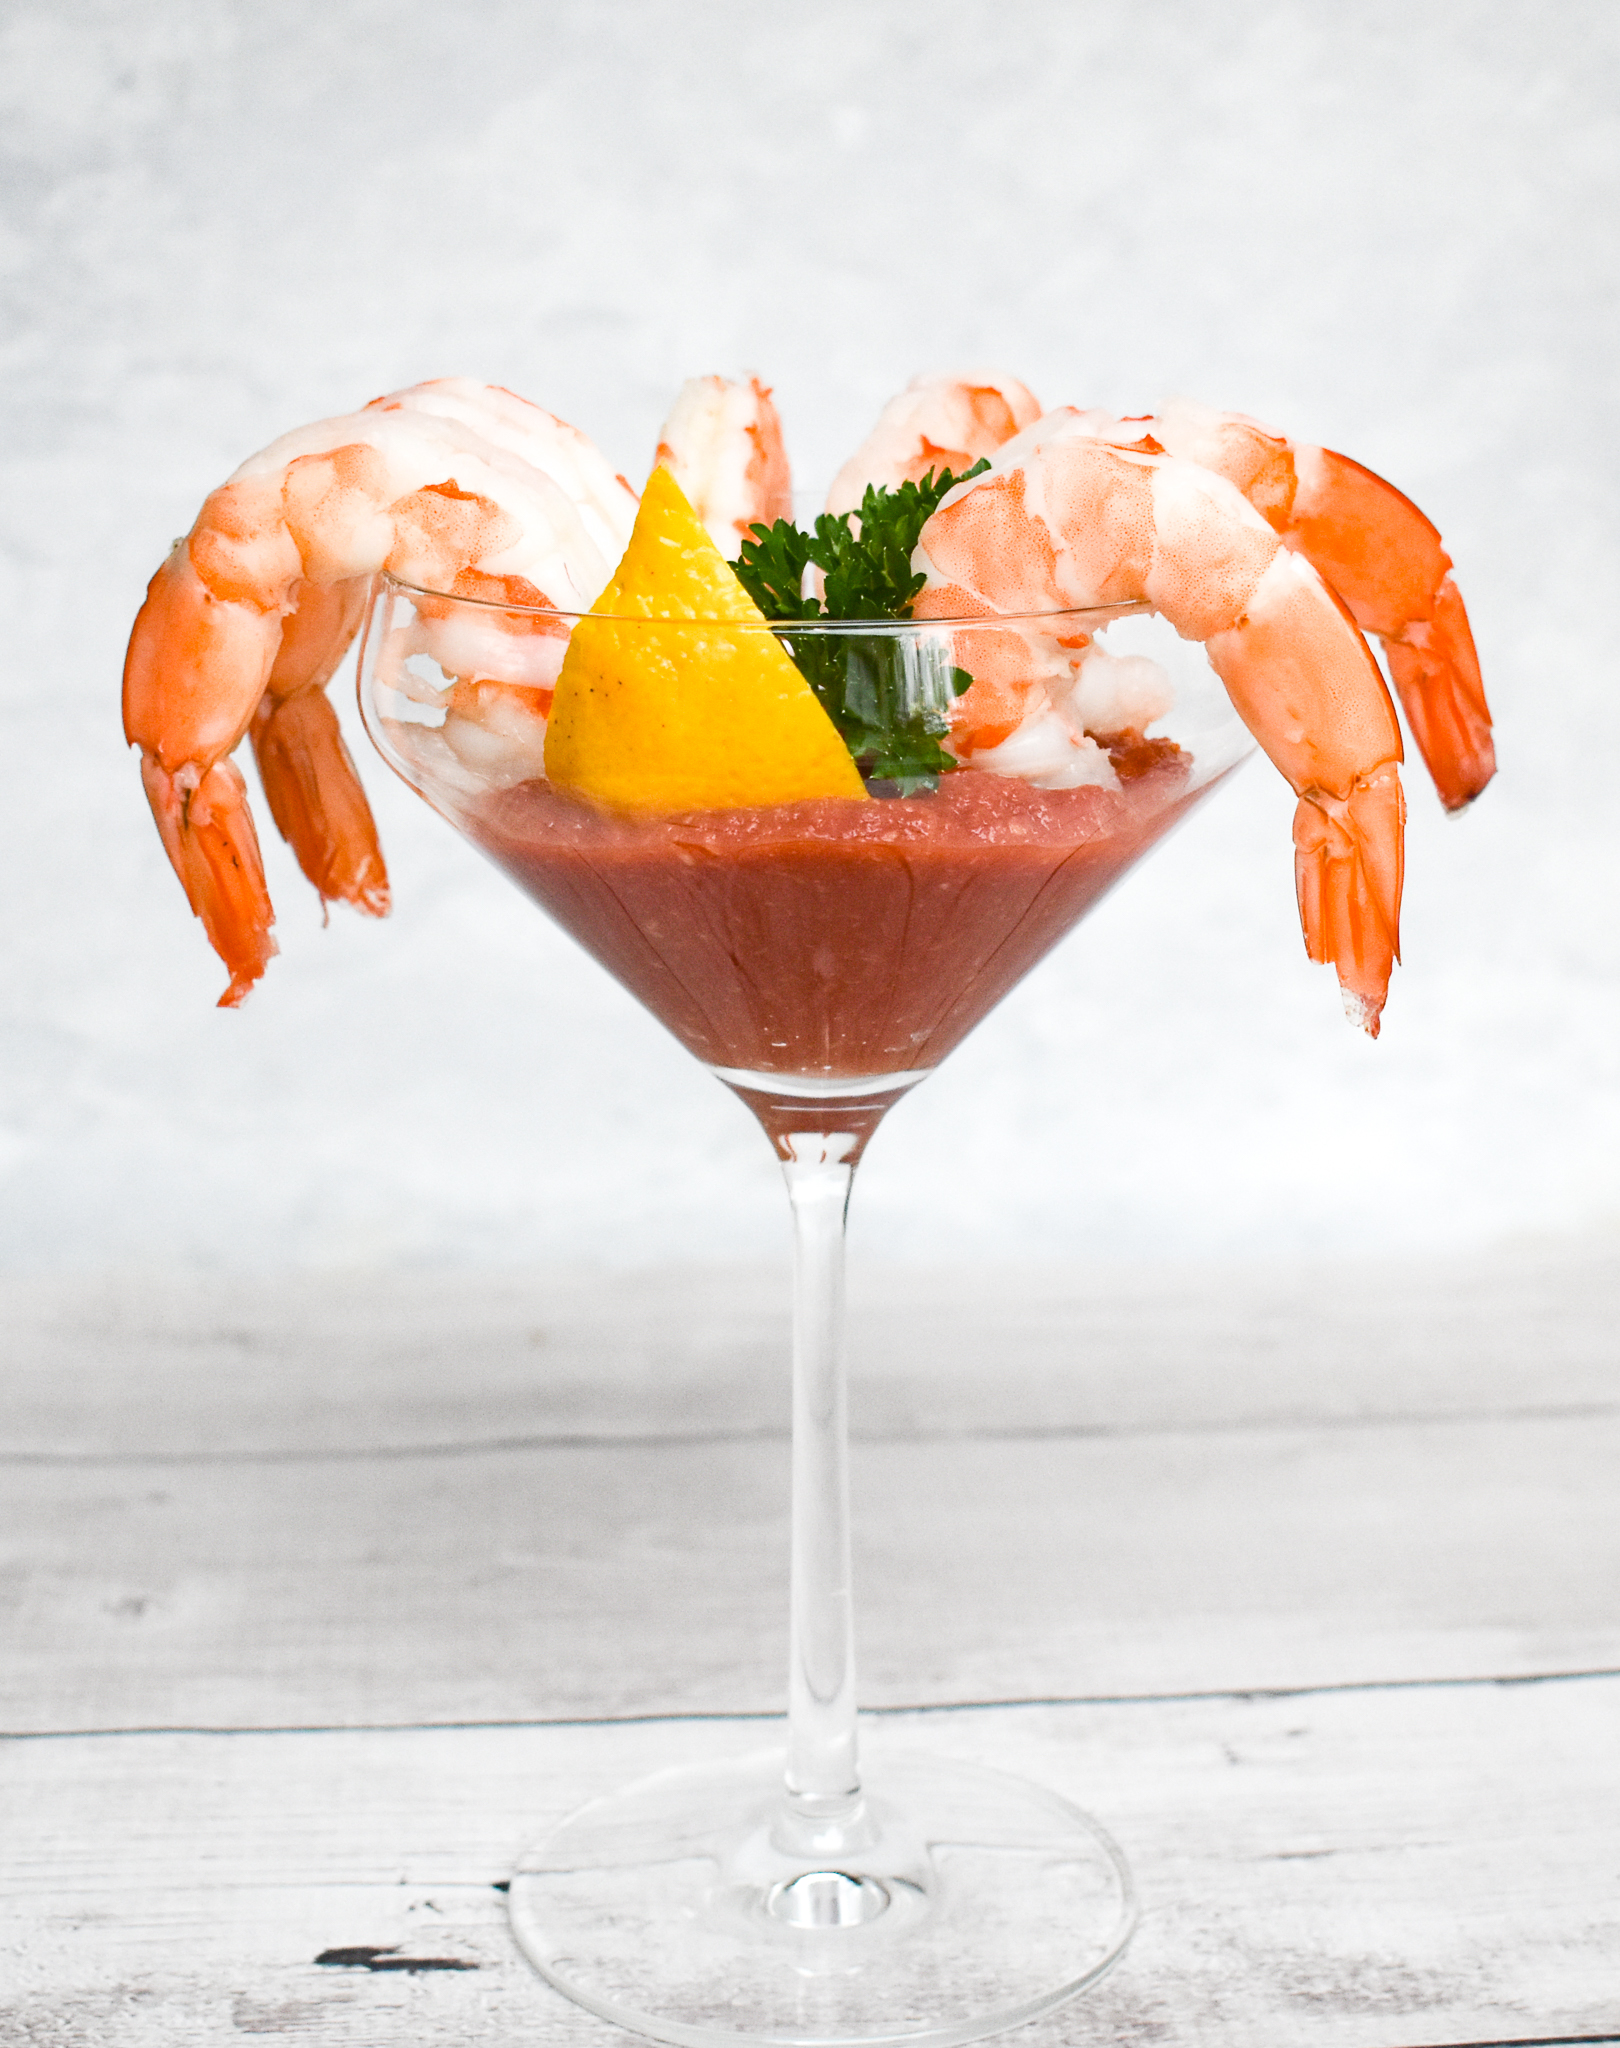 Rachael's Colossal Shrimp Cocktail